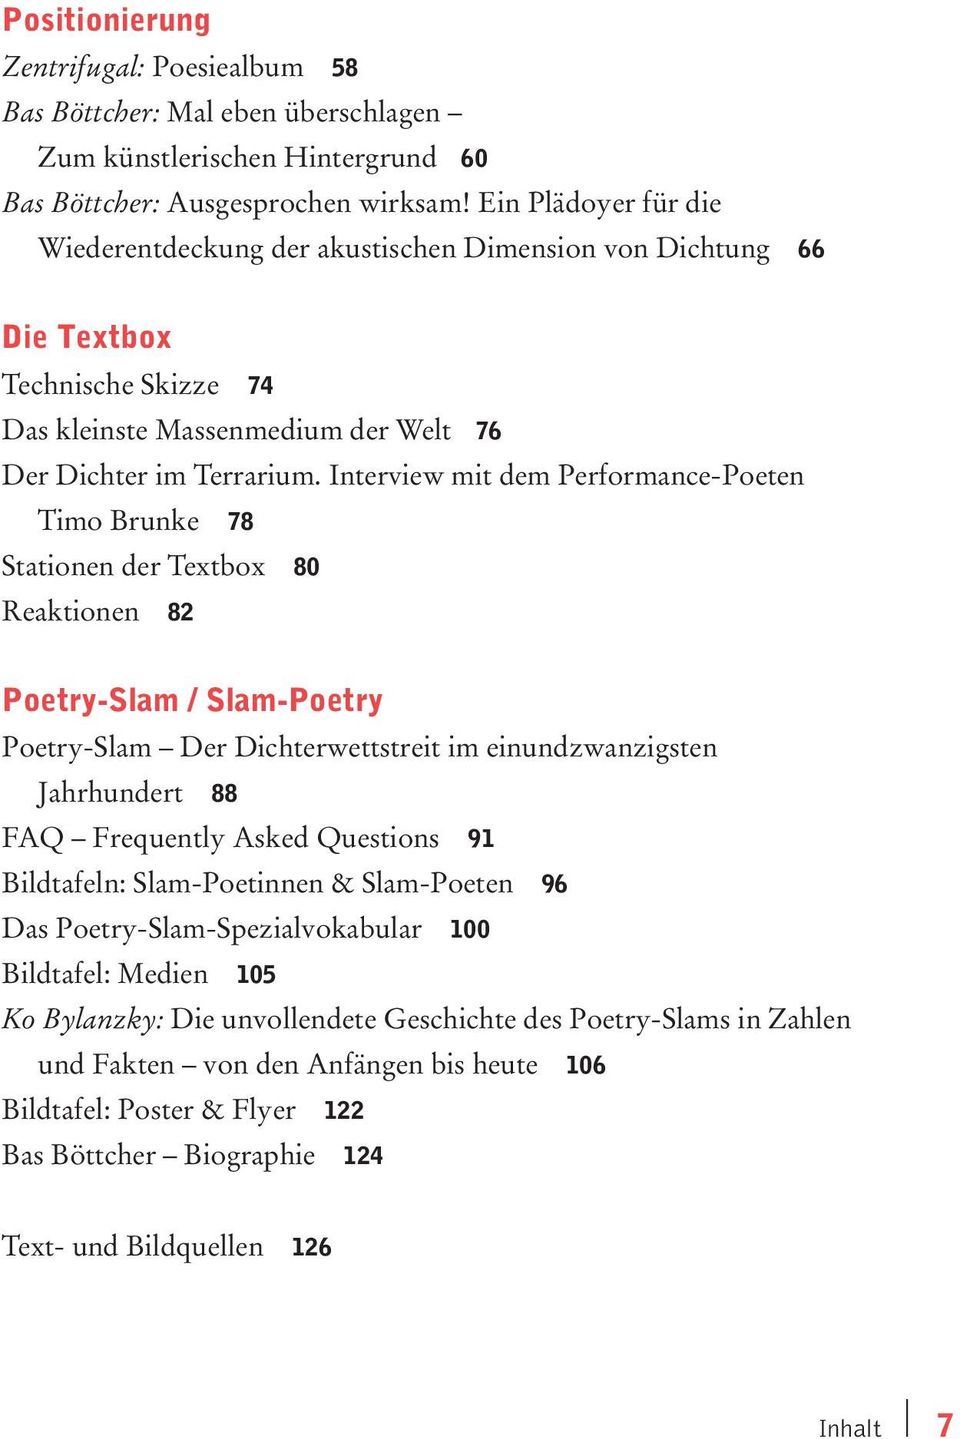 Interview mit dem Performance-Poeten Timo Brunke 78 Stationen der Textbox 80 Reaktionen 82 Poetry-Slam /Slam-Poetry Poetry-Slam Der Dichterwettstreit im einundzwanzigsten Jahrhundert 88 FAQ